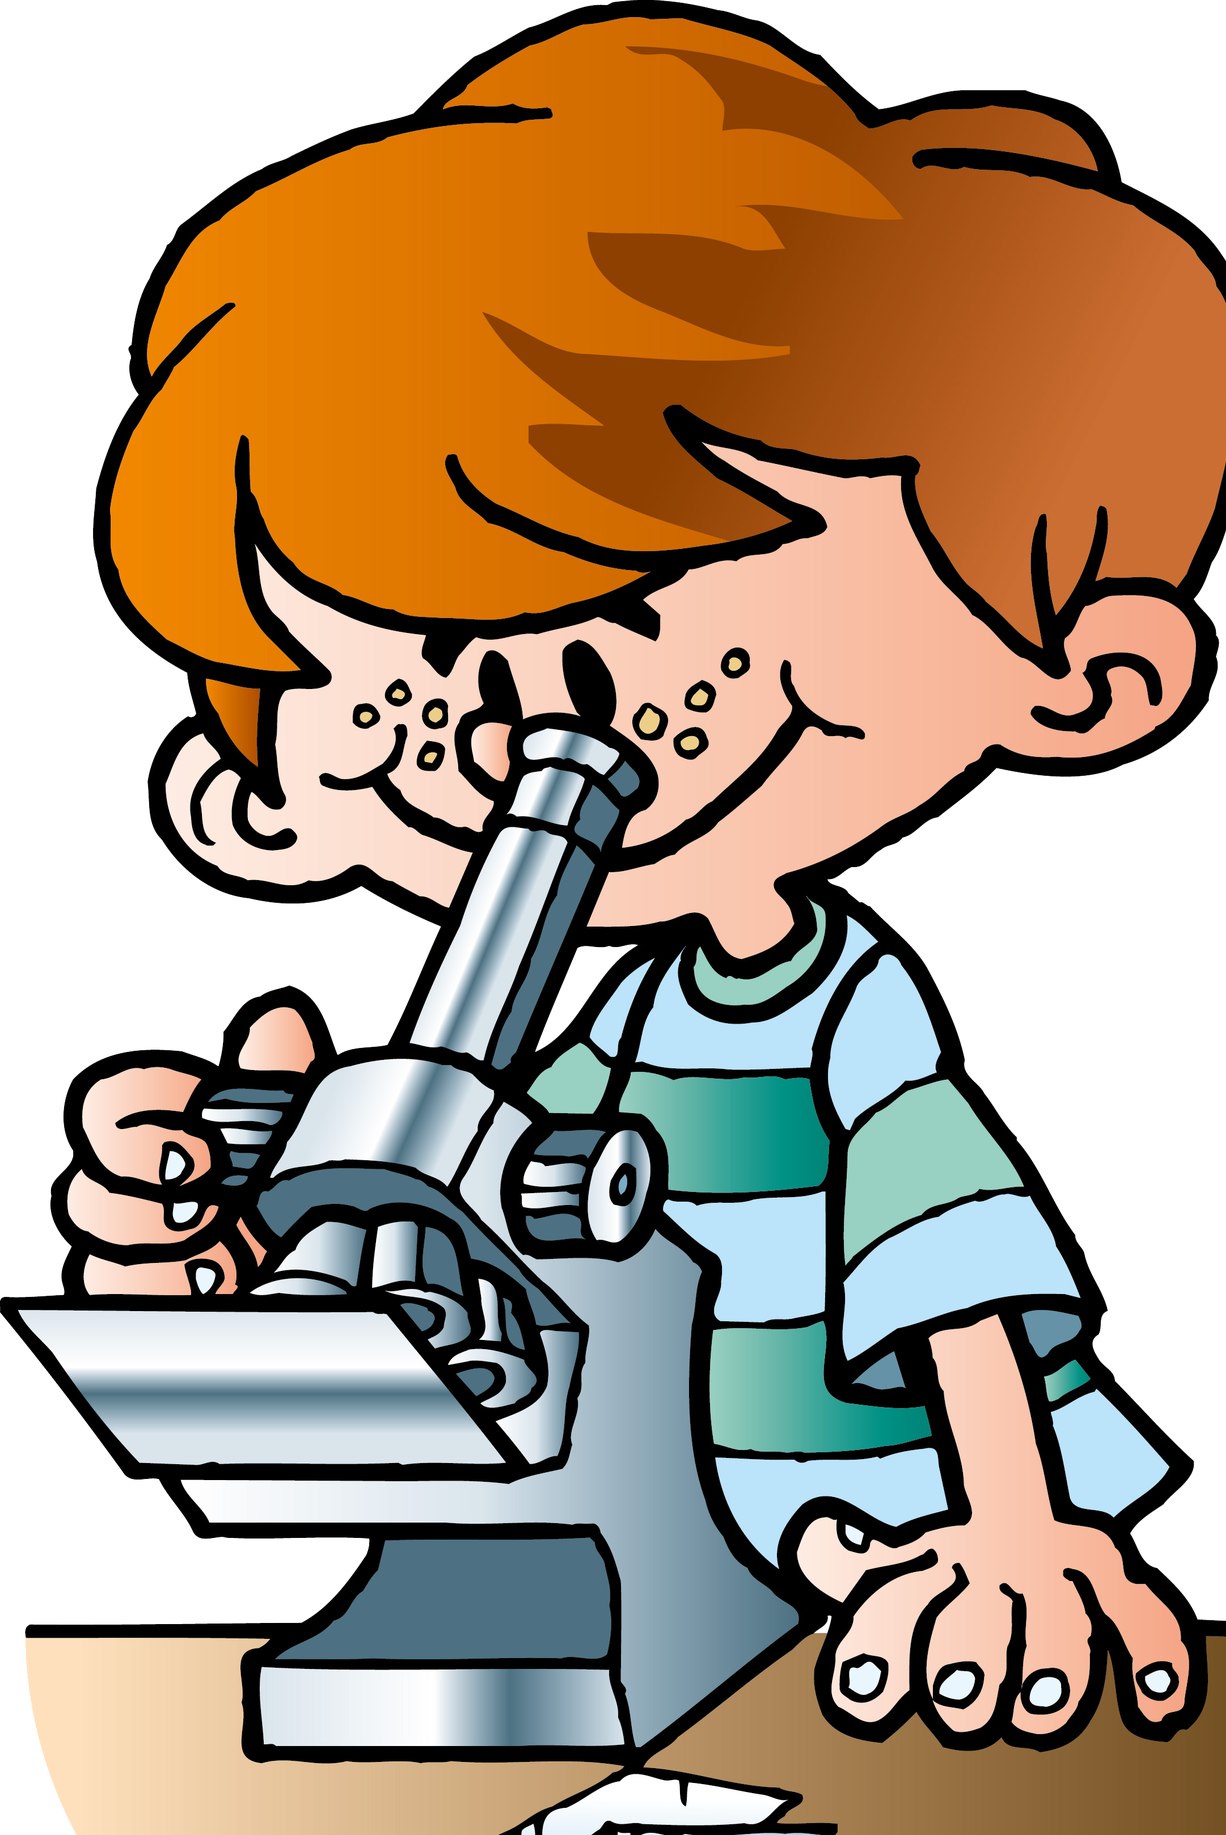 Микроскоп для детей